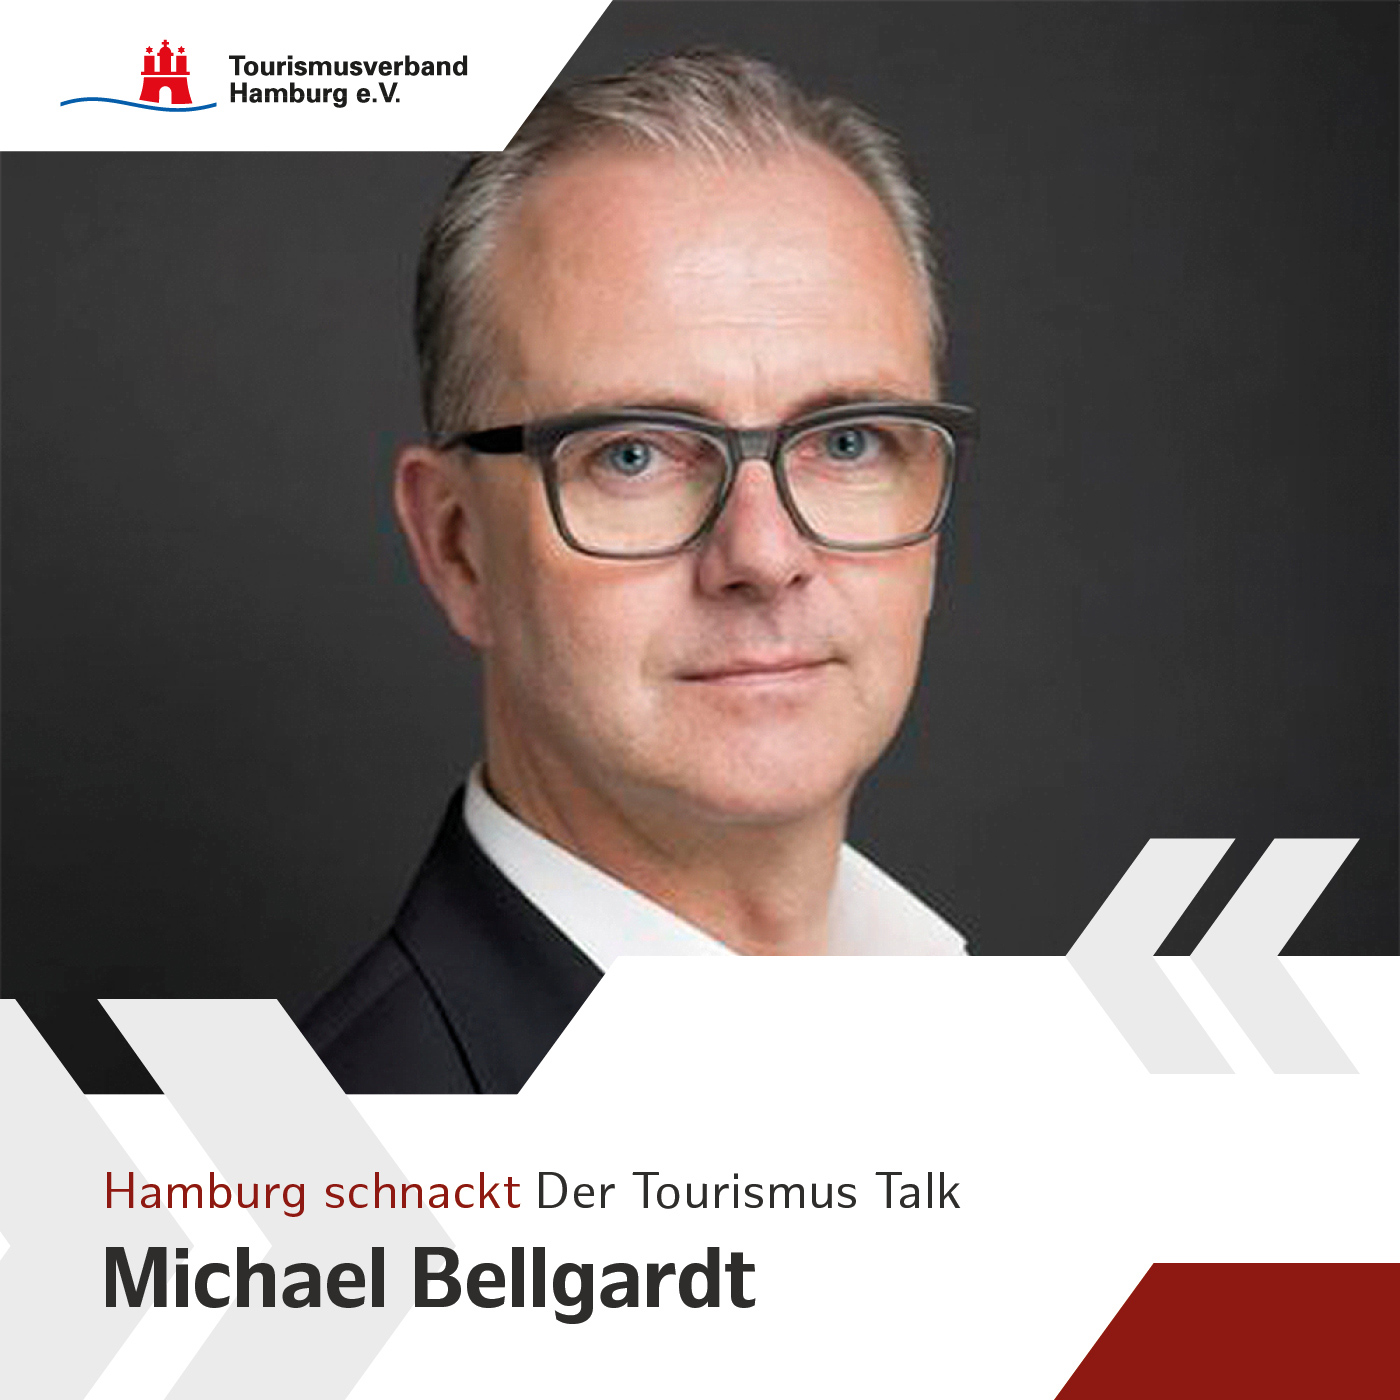 Hamburg schnackt mit Michael Bellgardt